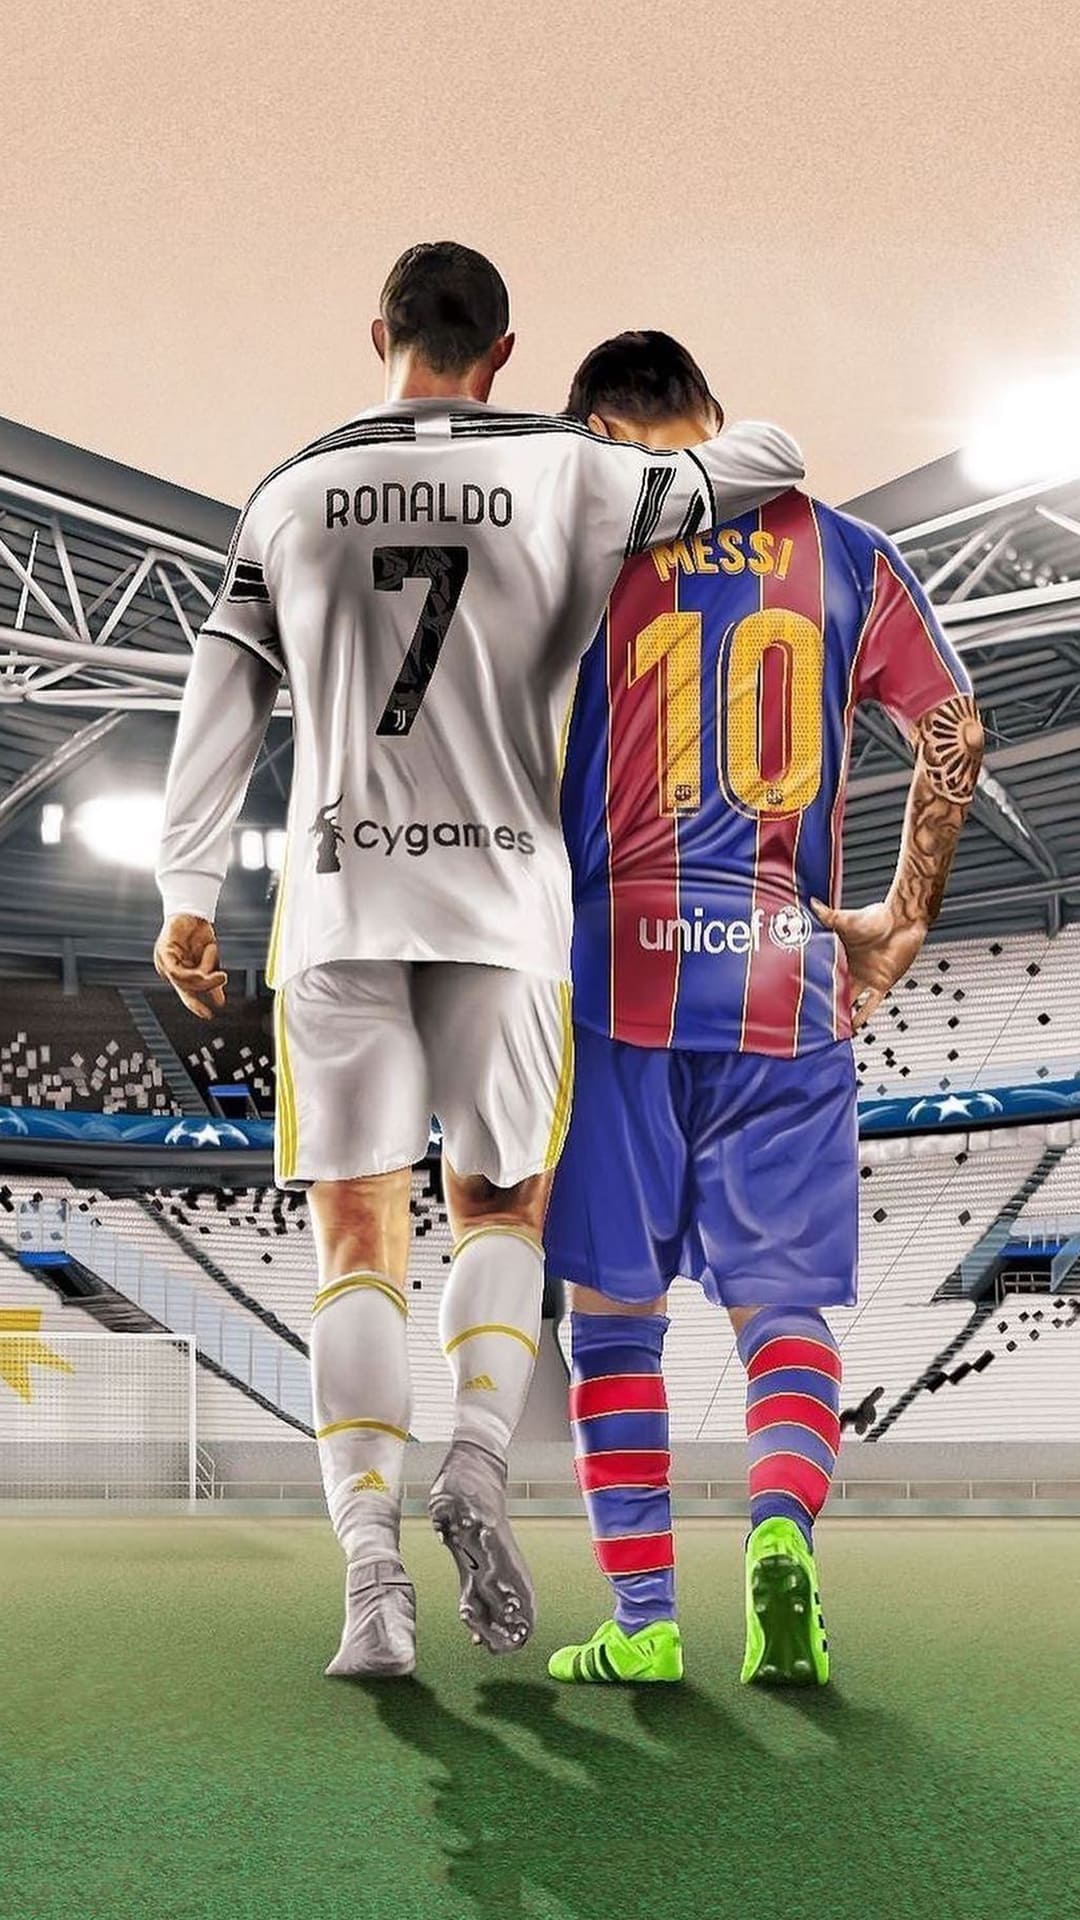 Messi and Ronaldo: Hai ngôi sao bóng đá hàng đầu thế giới - Messi và Ronaldo - đã cùng xuất hiện trong một bức ảnh. Hãy xem hình ảnh này để so sánh và đánh giá về phong độ của các cầu thủ.